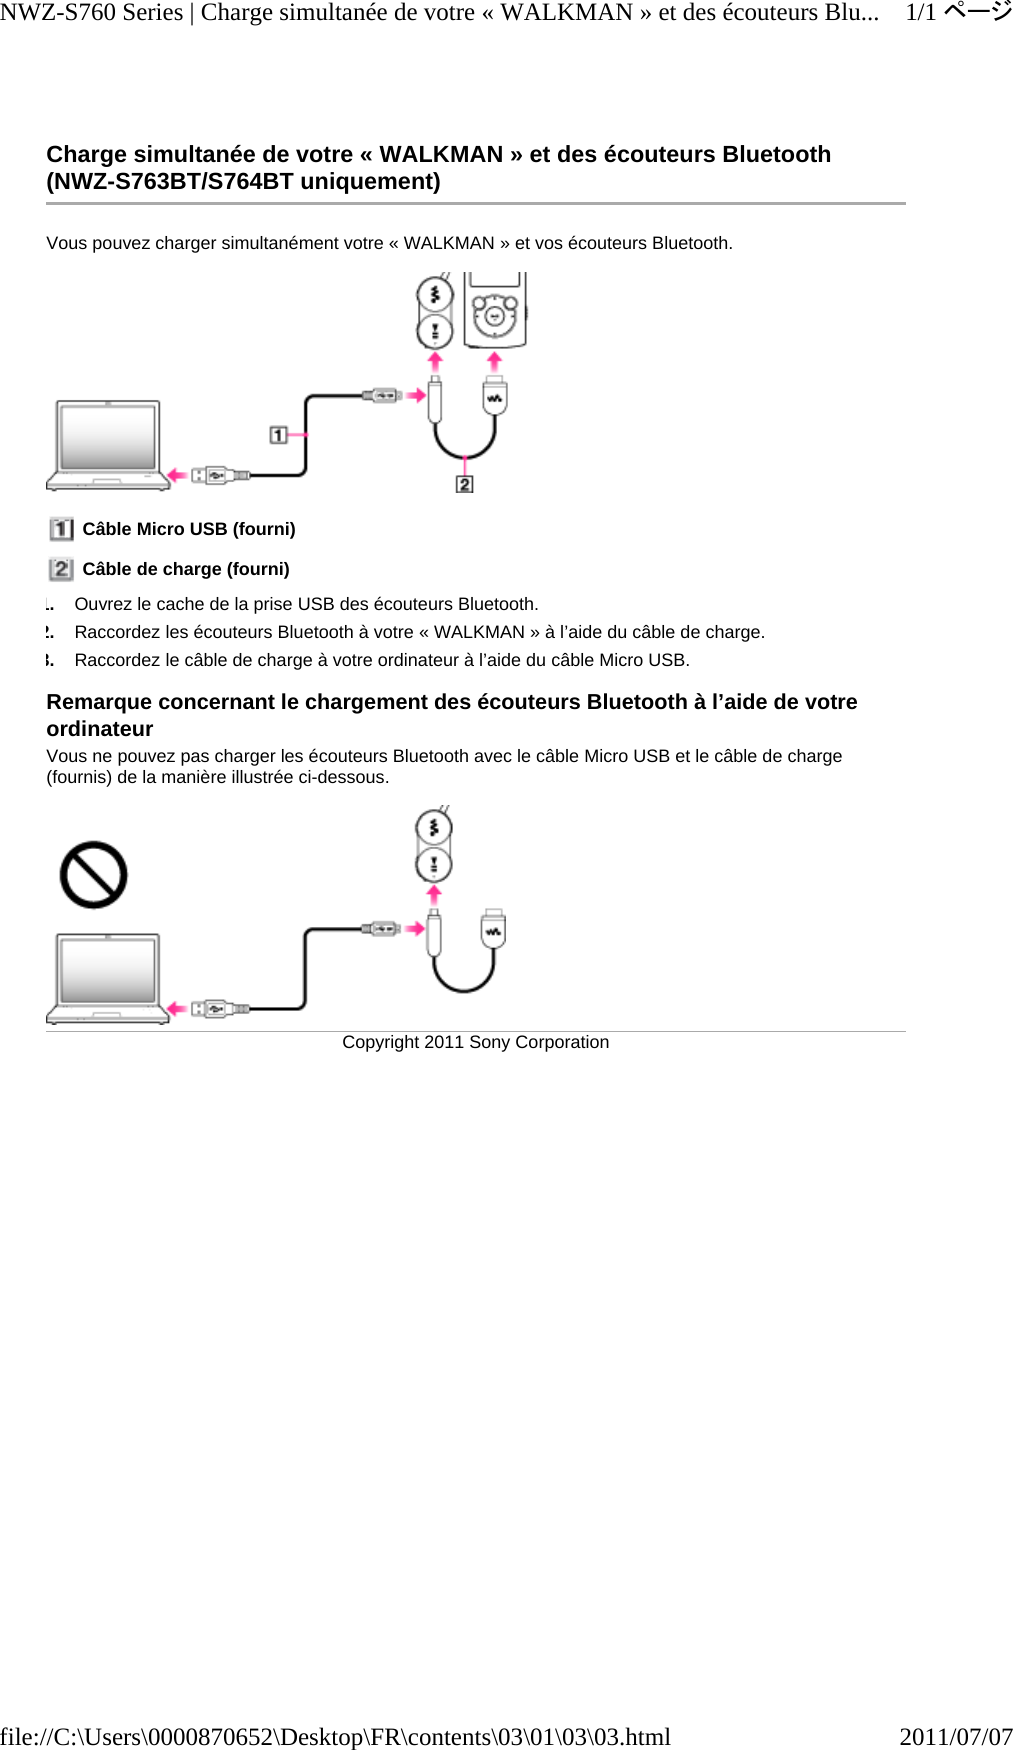 Charge simultanée de votre « WALKMAN » et des écouteurs Bluetooth (NWZ-S763BT/S764BT uniquement) Vous pouvez charger simultanément votre « WALKMAN » et vos écouteurs Bluetooth.   Câble Micro USB (fourni)  Câble de charge (fourni) 1.Ouvrez le cache de la prise USB des écouteurs Bluetooth. 2.Raccordez les écouteurs Bluetooth à votre « WALKMAN » à l’aide du câble de charge. 3.Raccordez le câble de charge à votre ordinateur à l’aide du câble Micro USB. Remarque concernant le chargement des écouteurs Bluetooth à l’aide de votre ordinateur Vous ne pouvez pas charger les écouteurs Bluetooth avec le câble Micro USB et le câble de charge (fournis) de la manière illustrée ci-dessous. Copyright 2011 Sony Corporation1/1ページNWZ-S760 Series | Charge simultanée de votre « WALKMAN » et des écouteurs Blu...2011/07/07file://C:\Users\0000870652\Desktop\FR\contents\03\01\03\03.html